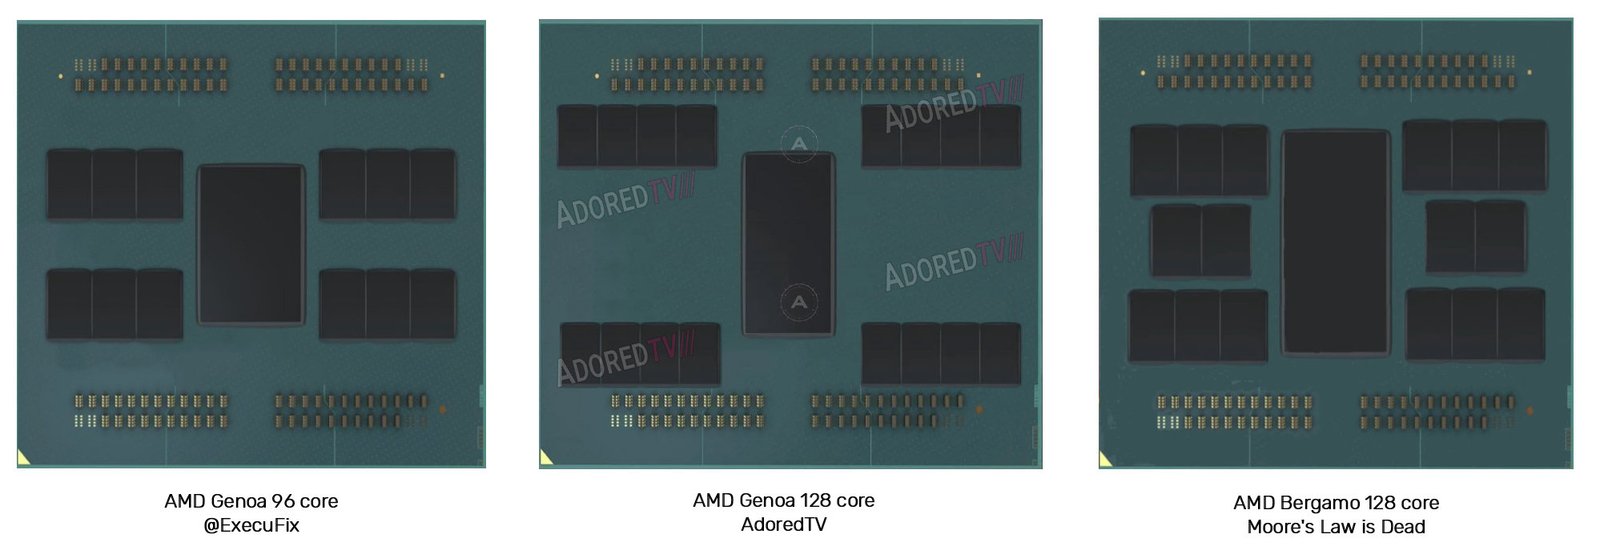 AMD Monet, AMD Bergamo, czyli energooszczędne APU, 128-rdzeniowe EPYC